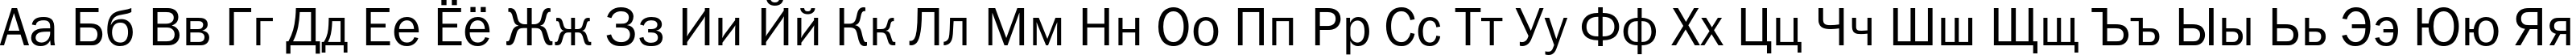 Пример написания русского алфавита шрифтом FranklinGothicBookC